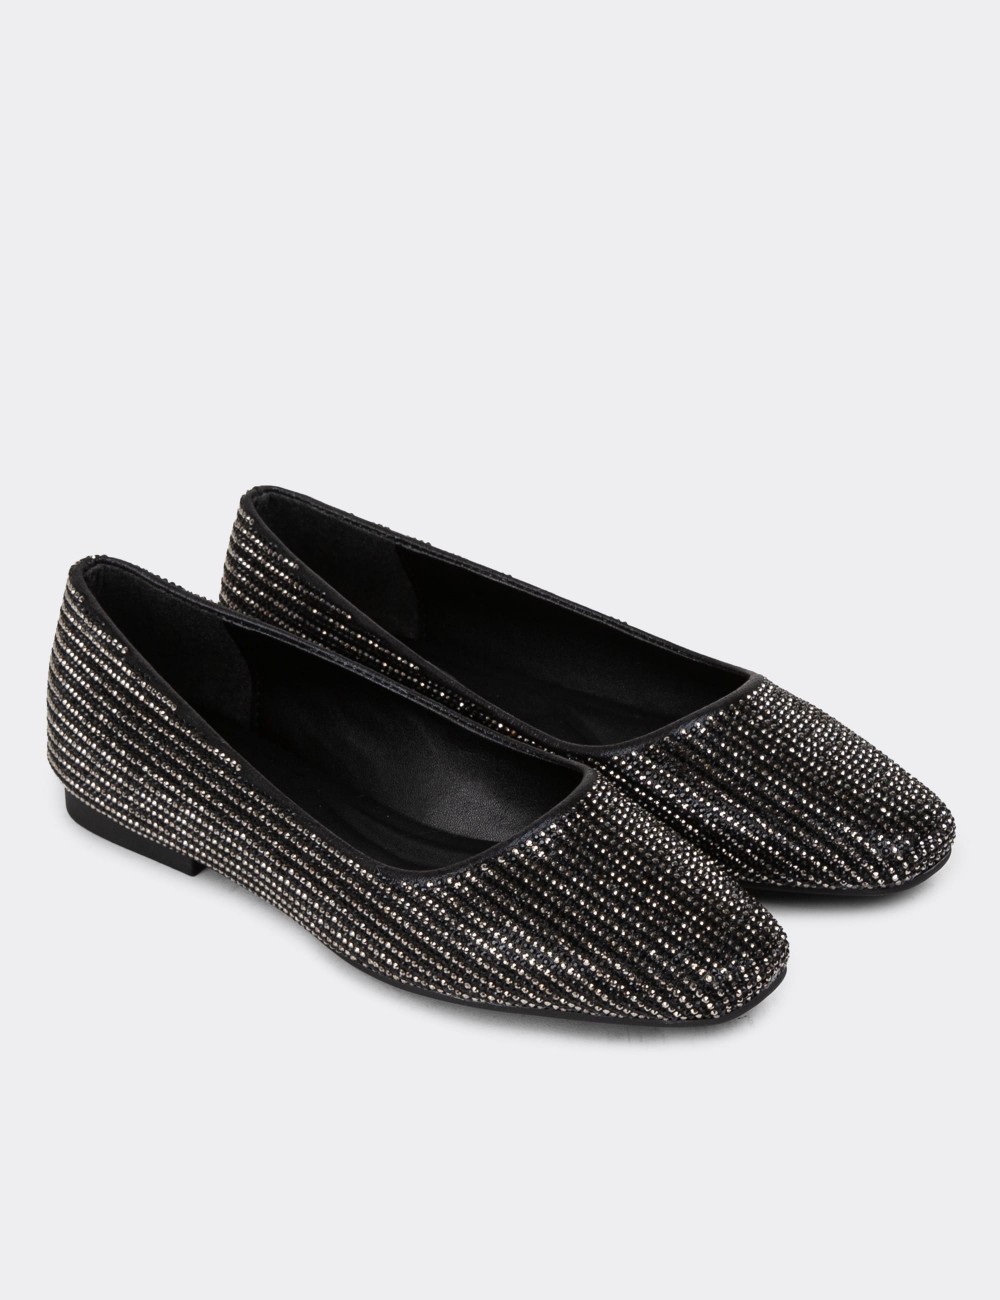 Black Loafers - K2031ZSYHC01